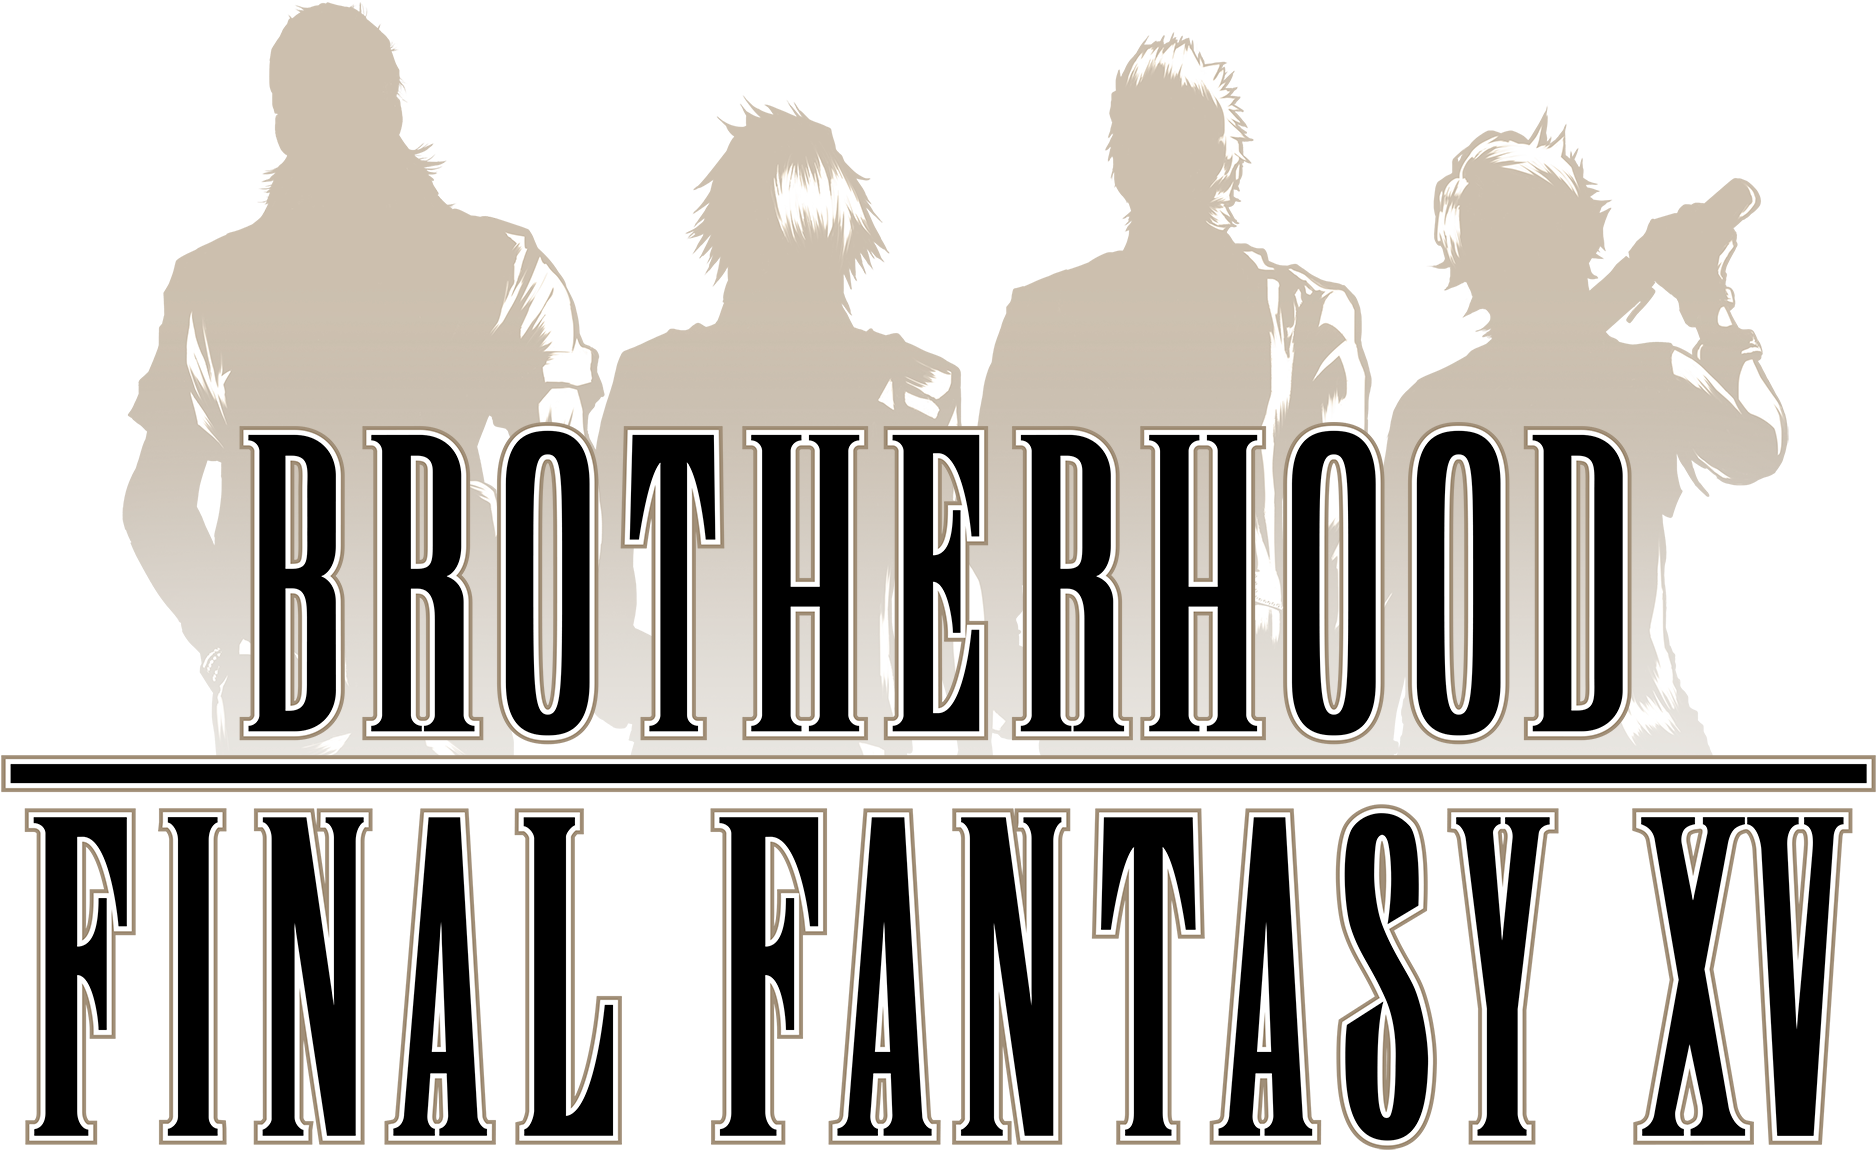 Final Fantasy Xv - Final Fantasy Xv Brotherhood Logo Clipart (2000x1209), Png Download